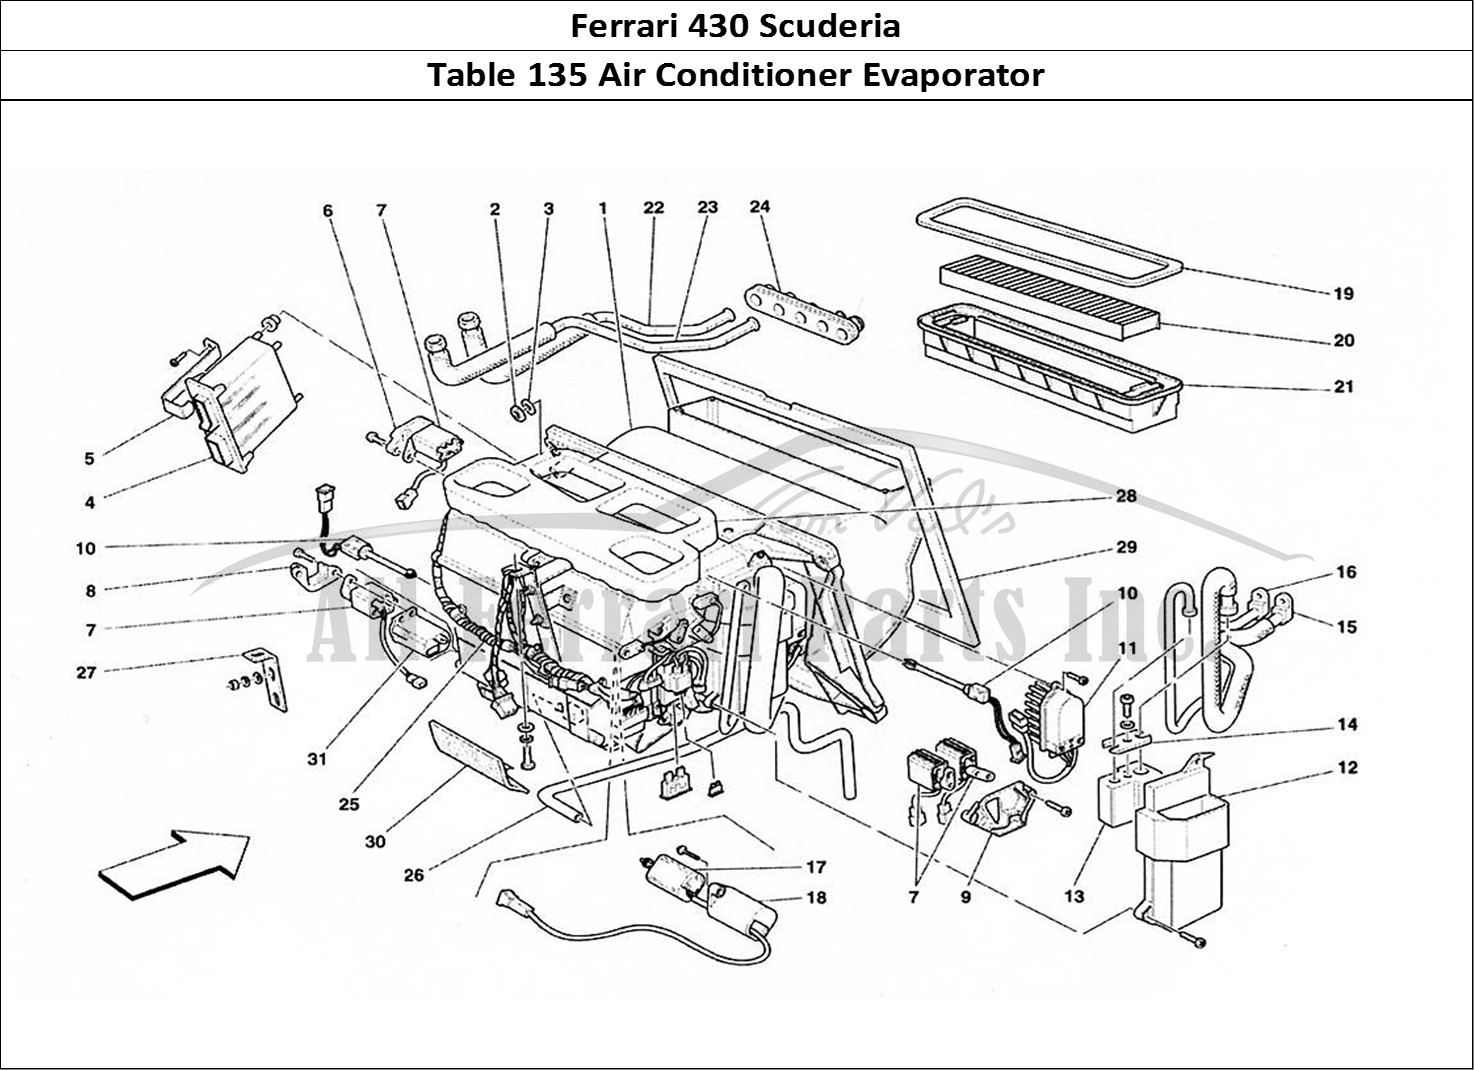 Ferrari Parts Ferrari 430 Scuderia Page 135 Evaporator Unit